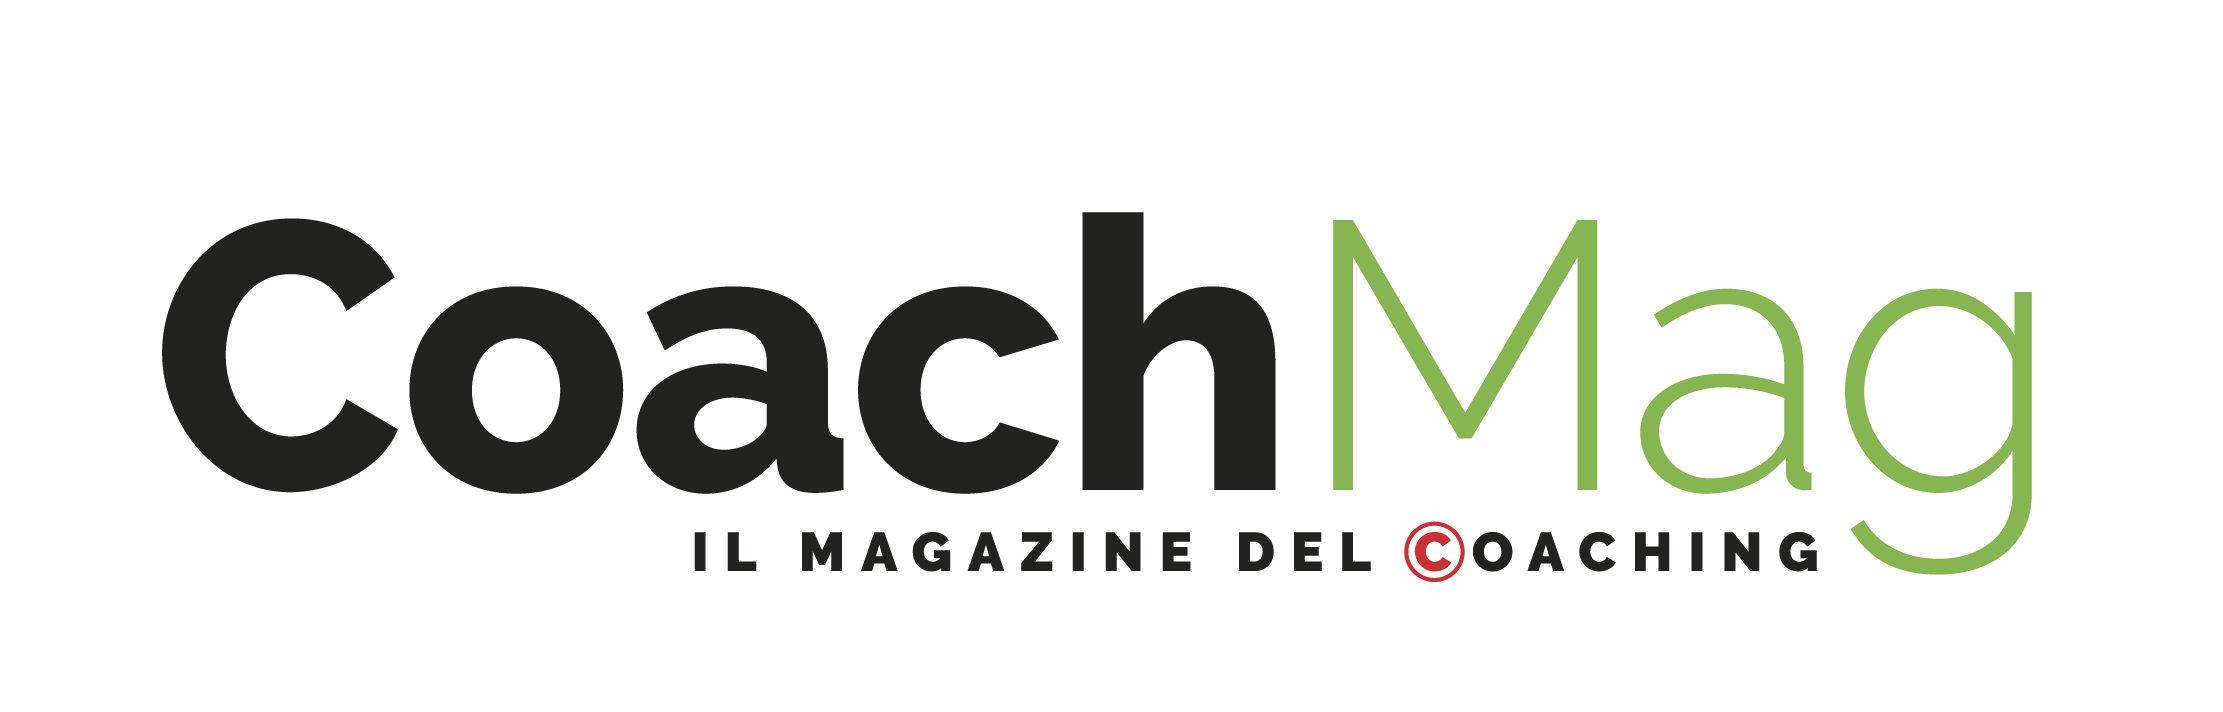 CoachMag, il Magazine del Coaching